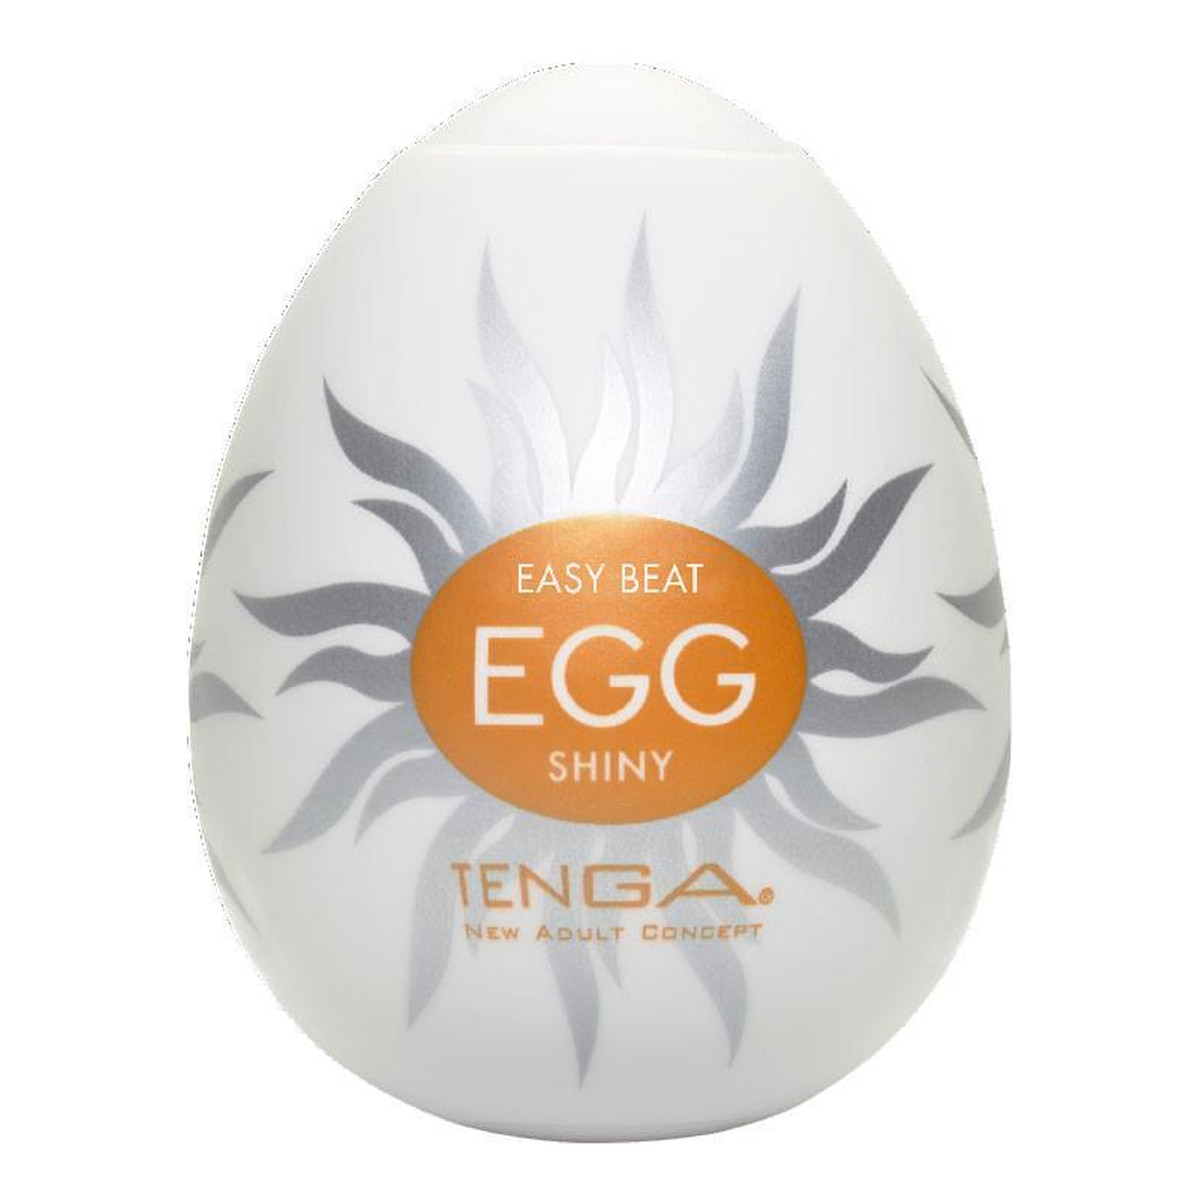 Tenga Easy beat egg shiny jednorazowy masturbator w kształcie jajka